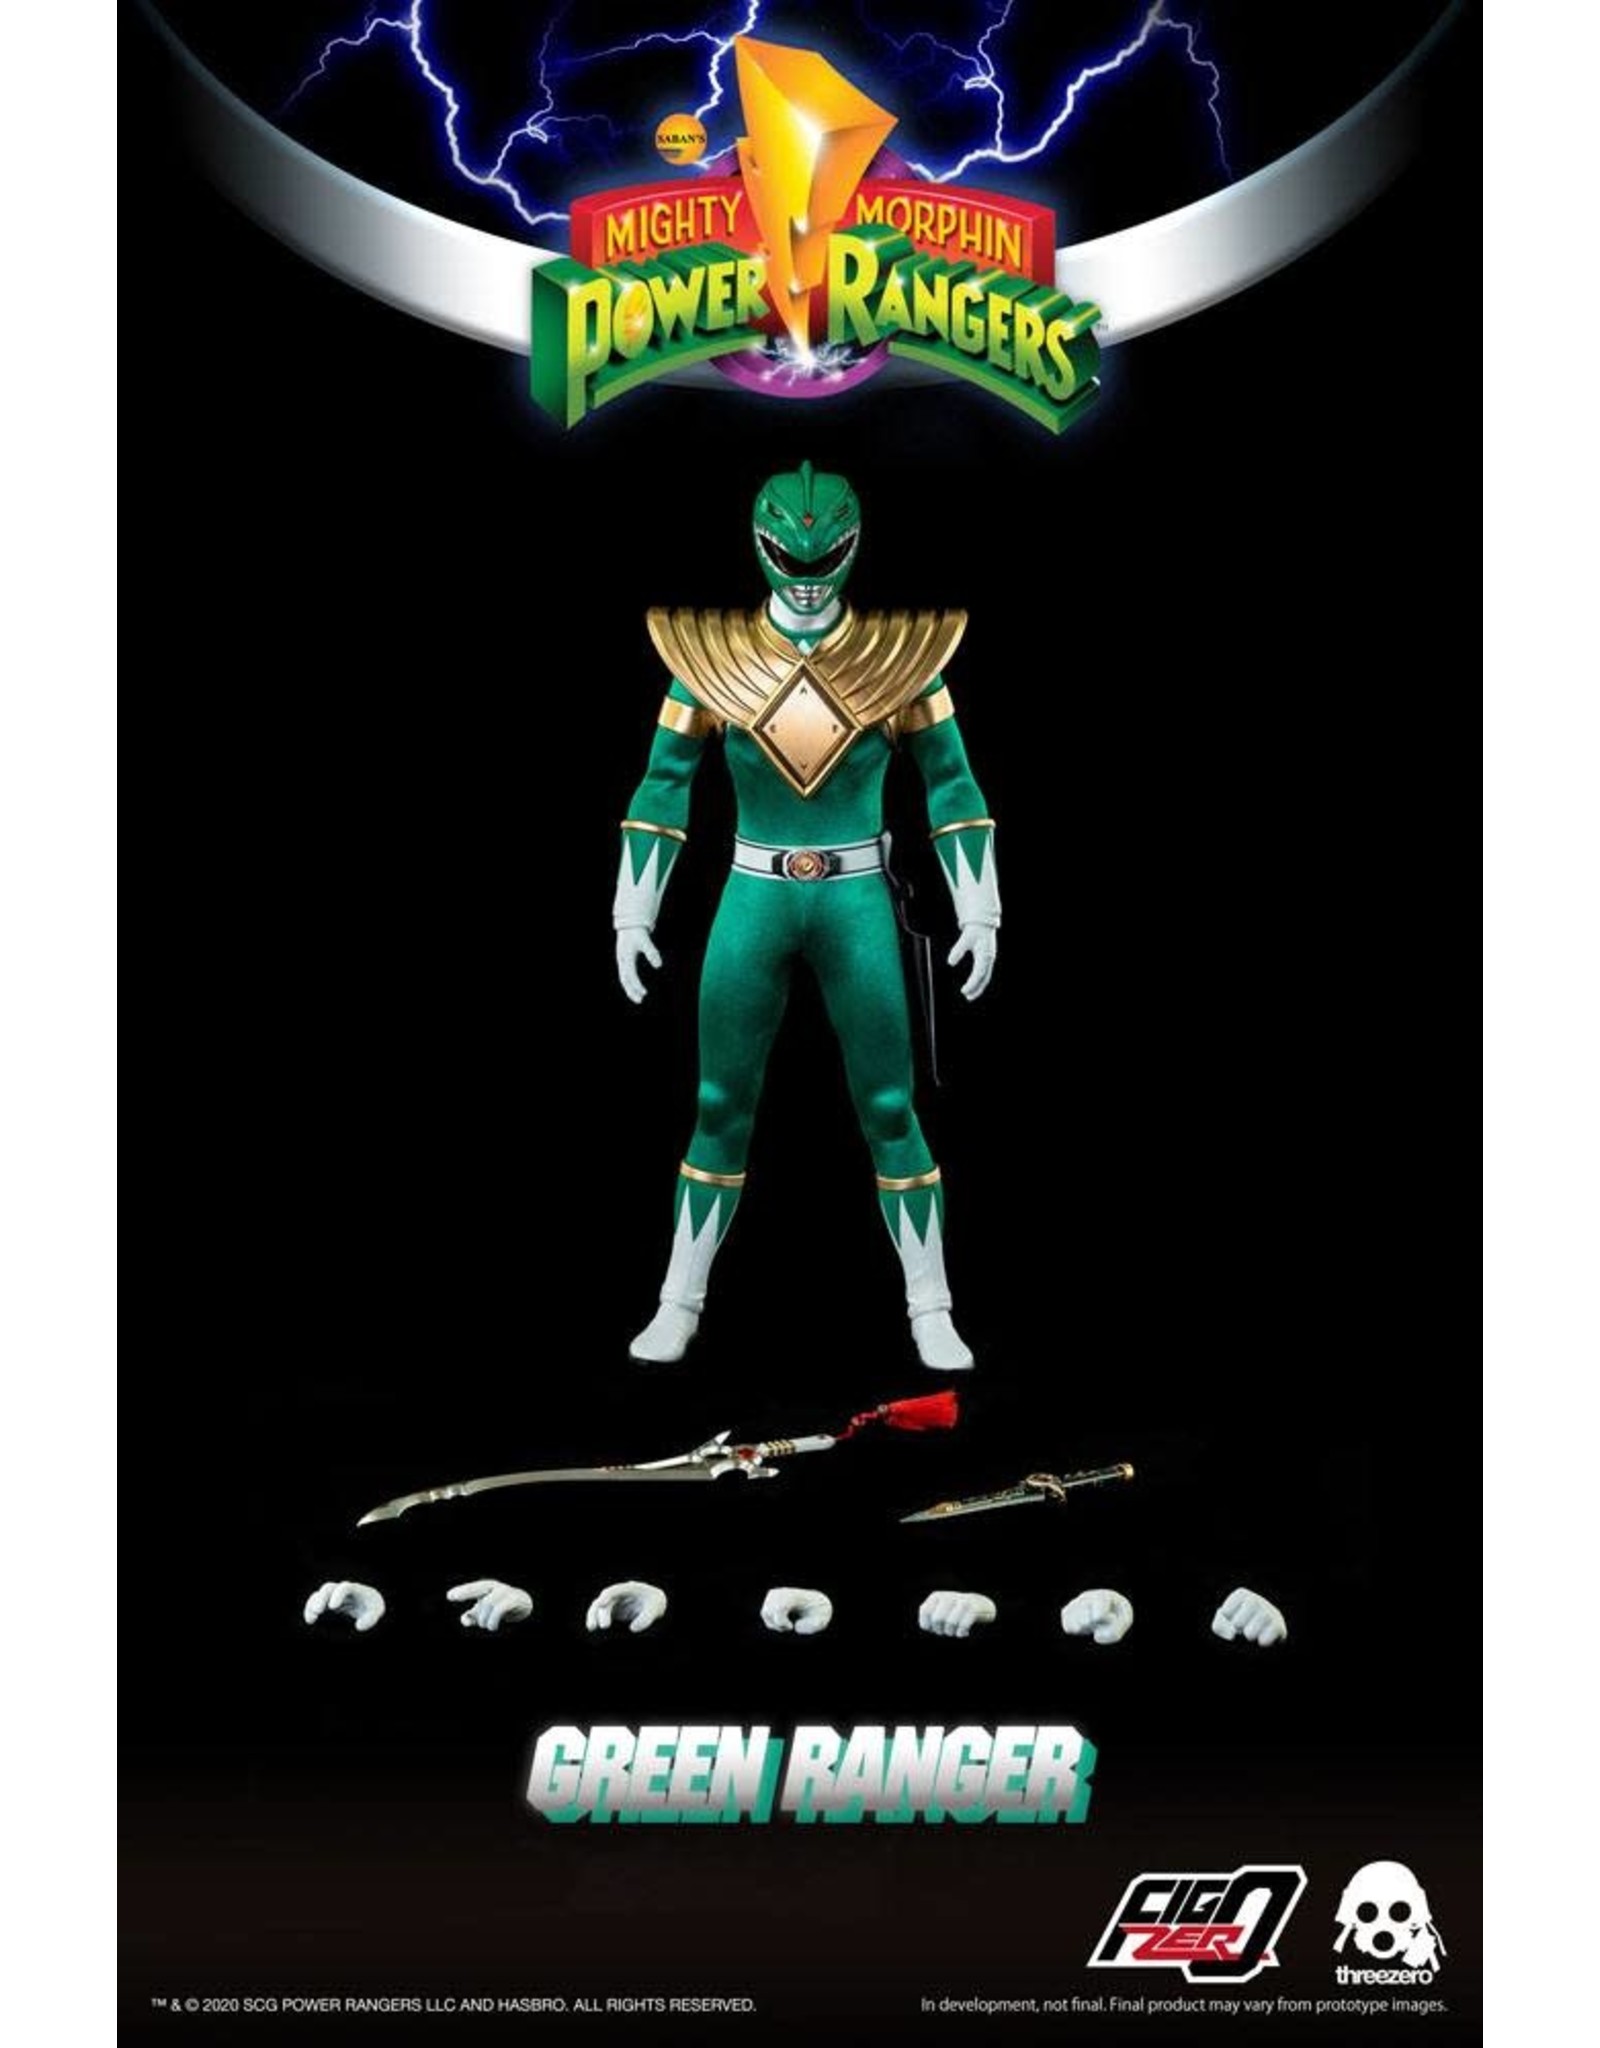 ThreeZero MIGHTY MORPHIN POWER RANGERS FigZero Action Figure 1/6 30cm - Green Ranger